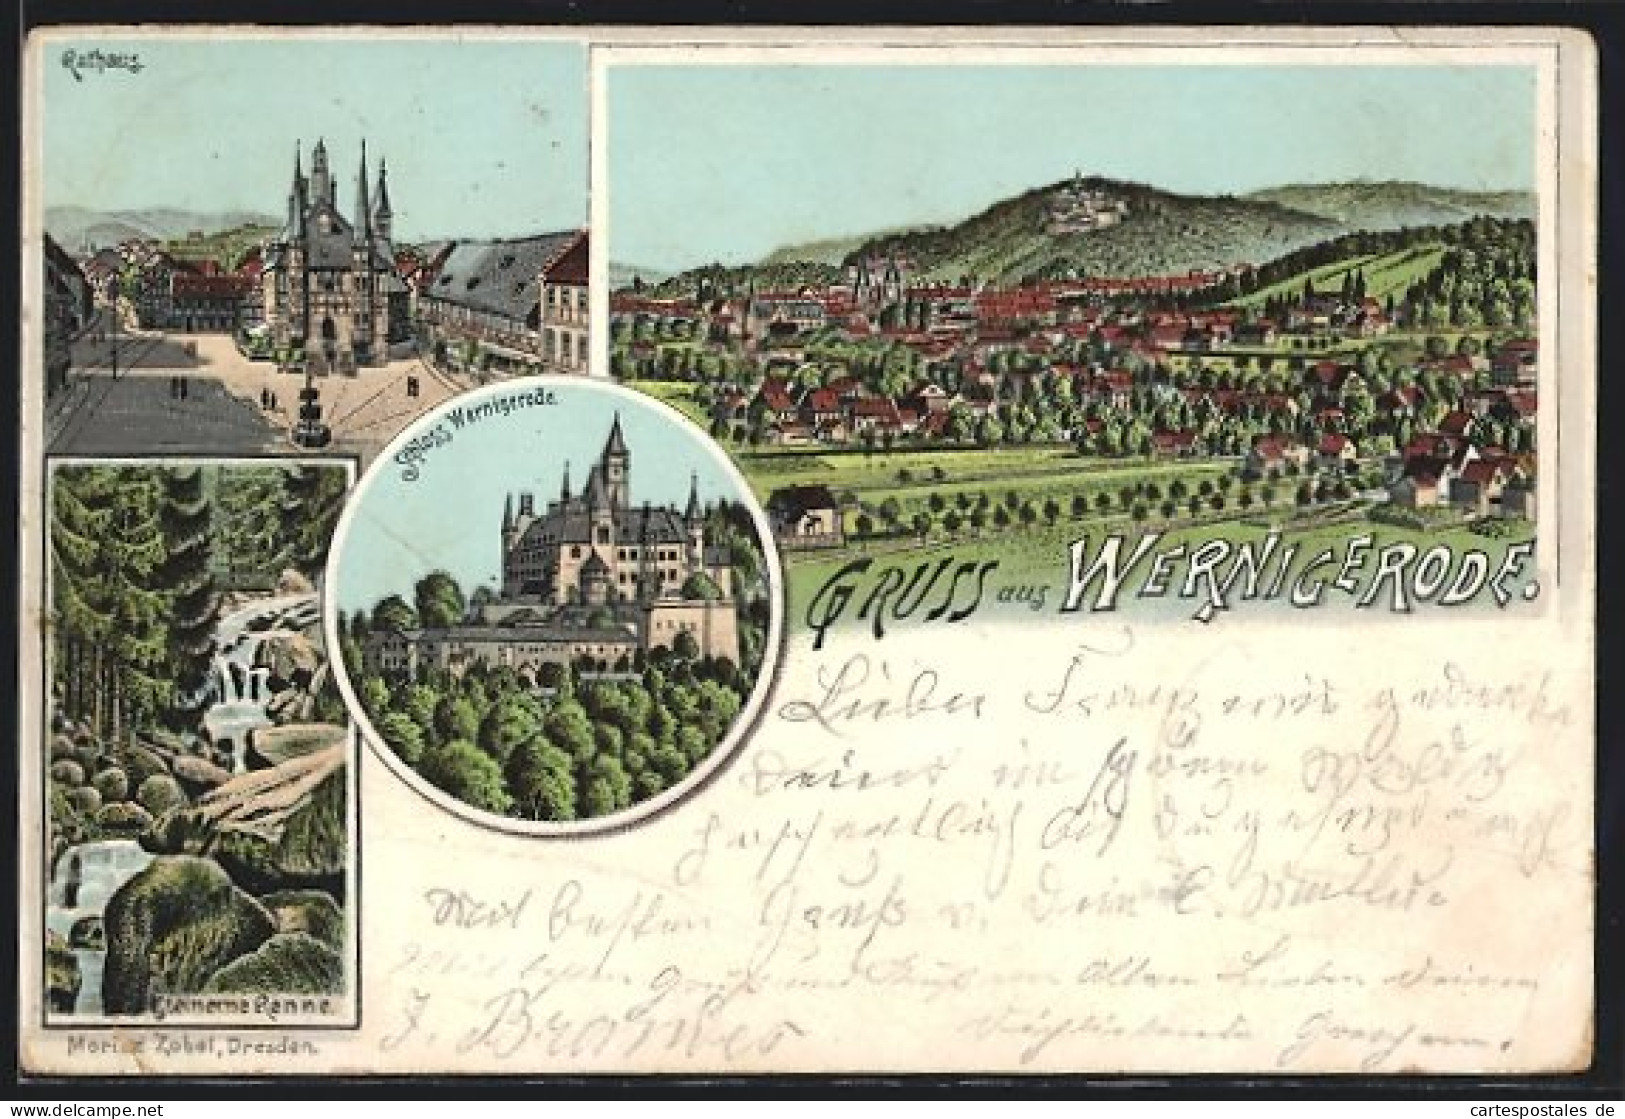 Lithographie Wernigerode, Ortsansicht Aus Der Ferne, Rathaus, Steinerne Renne, Schloss Wernigerode  - Wernigerode